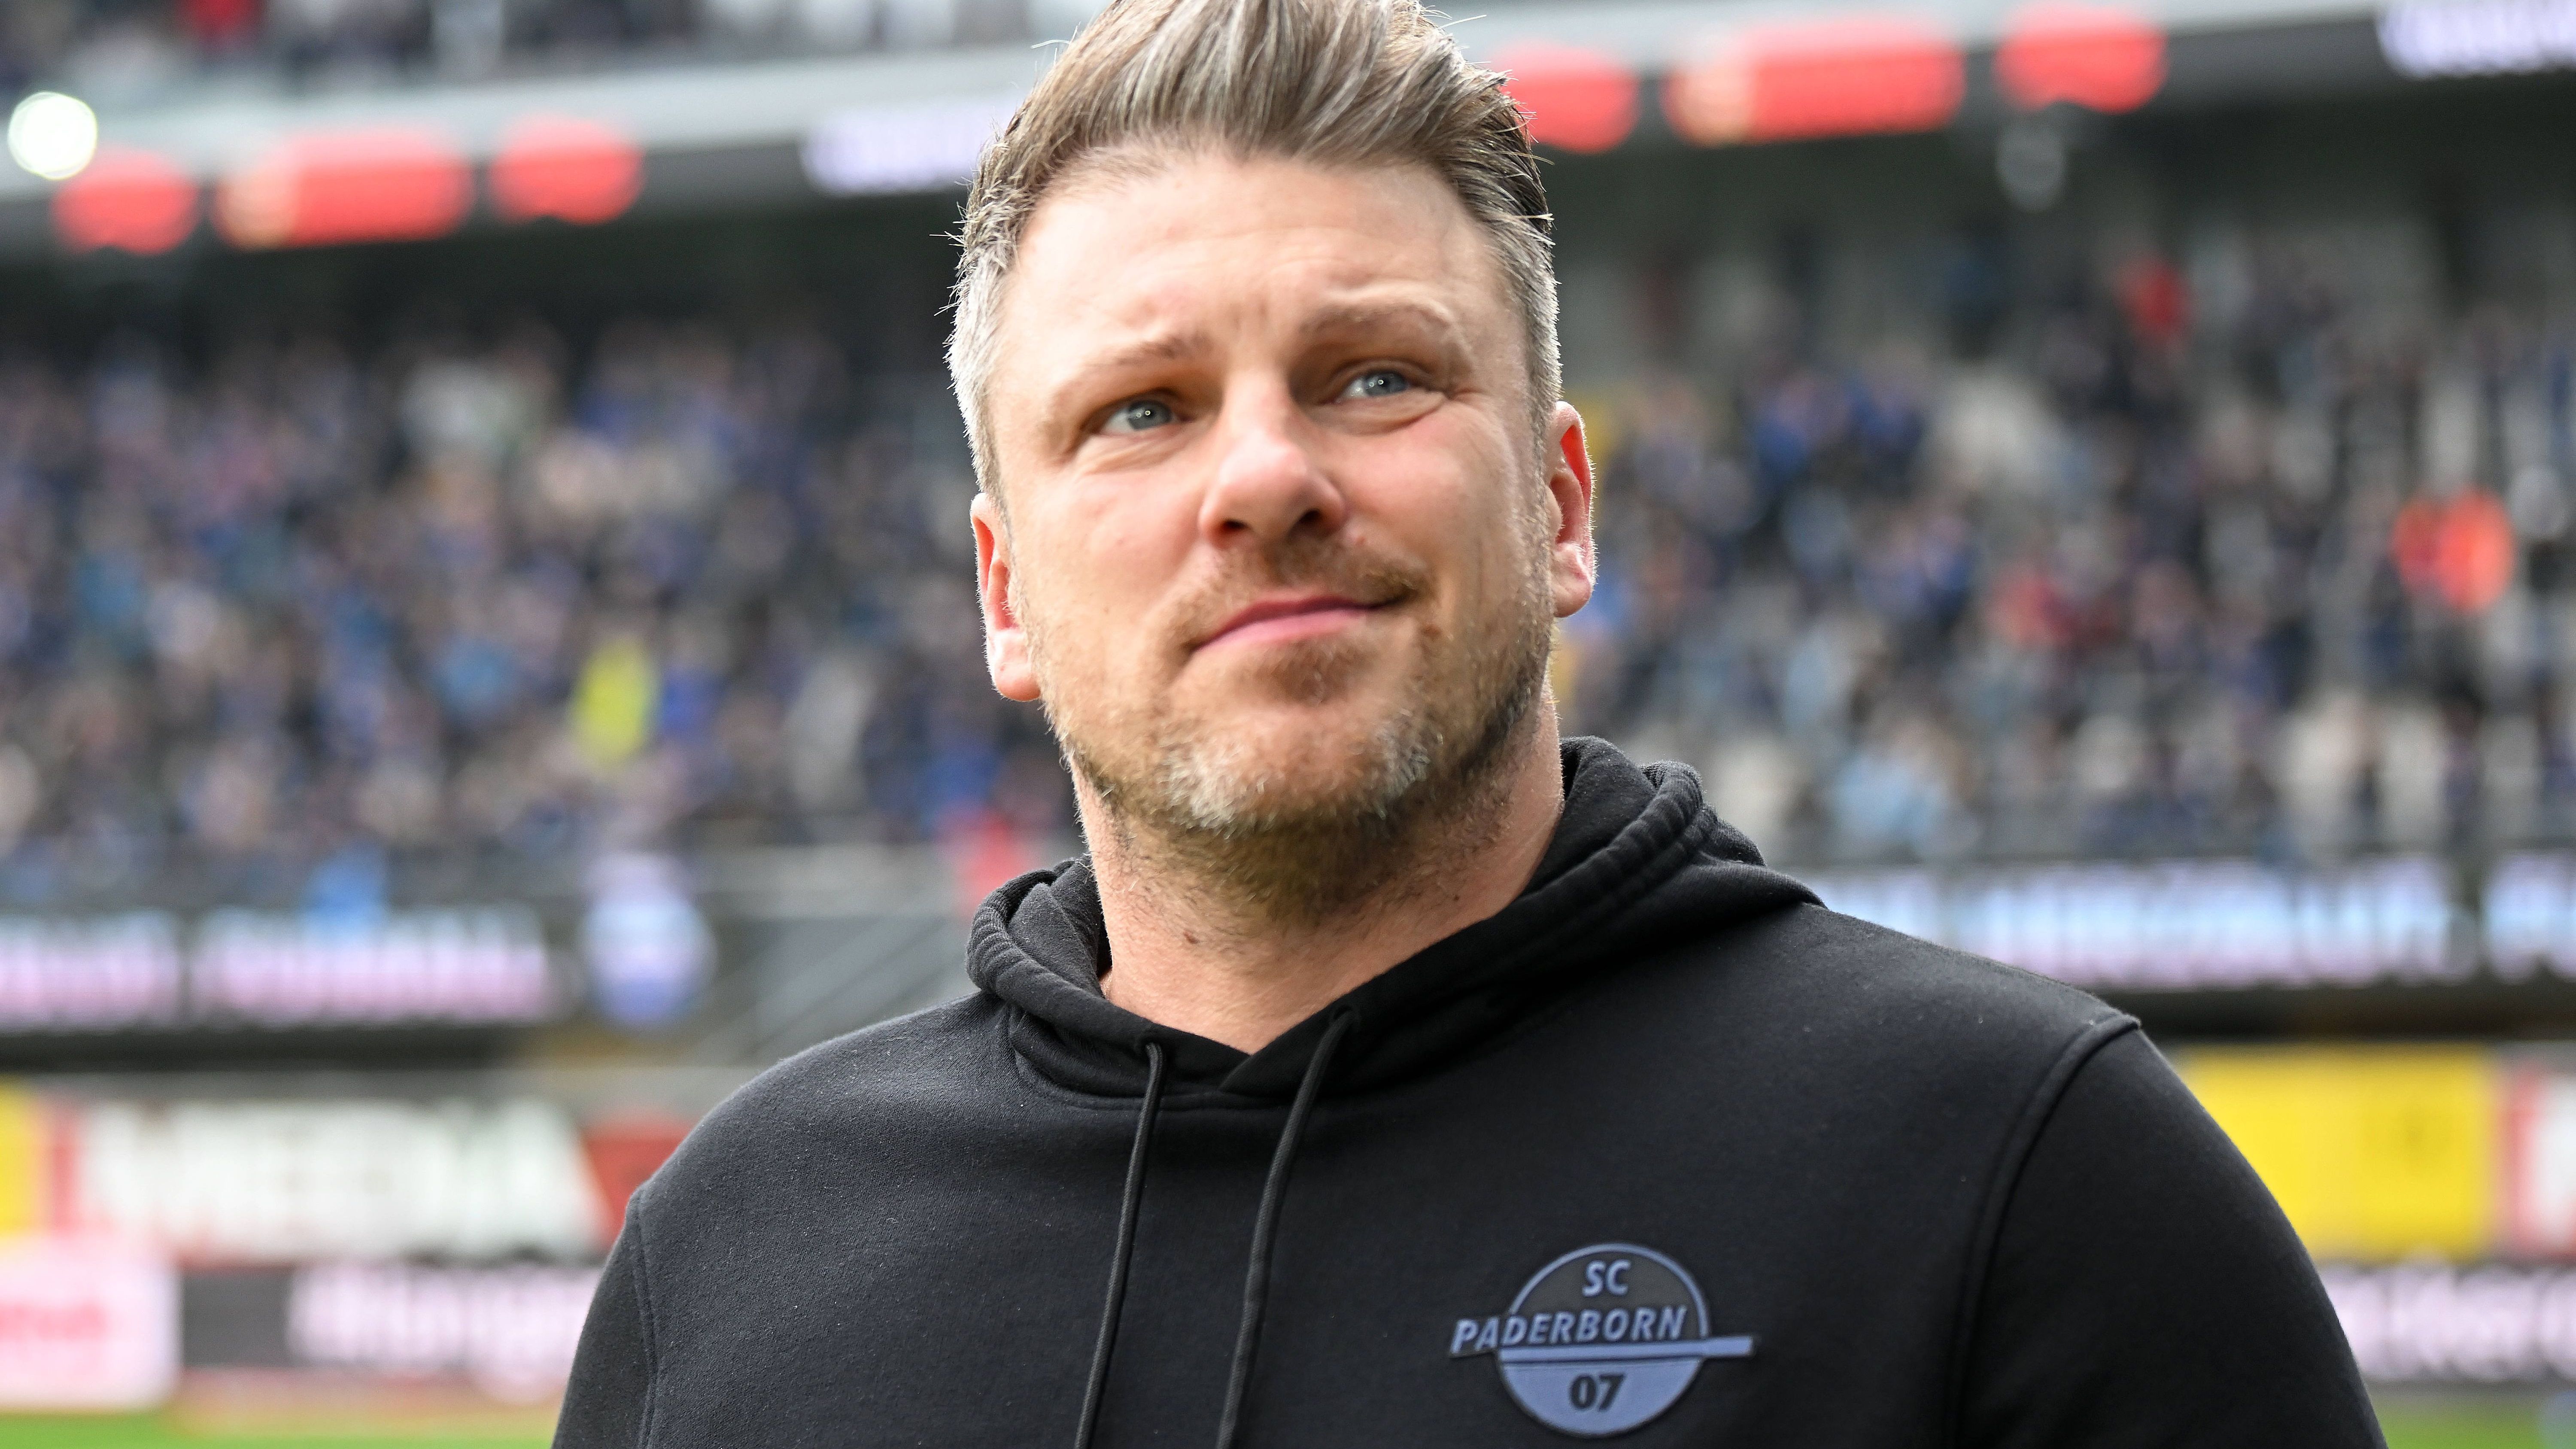 <strong>Lukas Kwasniok</strong><br>Lukas Kwasniok, Trainer des Zweitligisten SC Paderborn, befindet sich offenbar auf der Kandidatenliste für die Walter-Nachfolge. Das berichten die "Hamburger Morgenpost" und der "kicker". Der 42-Jährige coacht seit 2021 die Ostwestfalen und soll vor allem bei den Auswärtsspielen in Hamburg Eindruck bei den HSV-Bossen hinterlassen haben. Sein Vertrag läuft noch bis 2025.